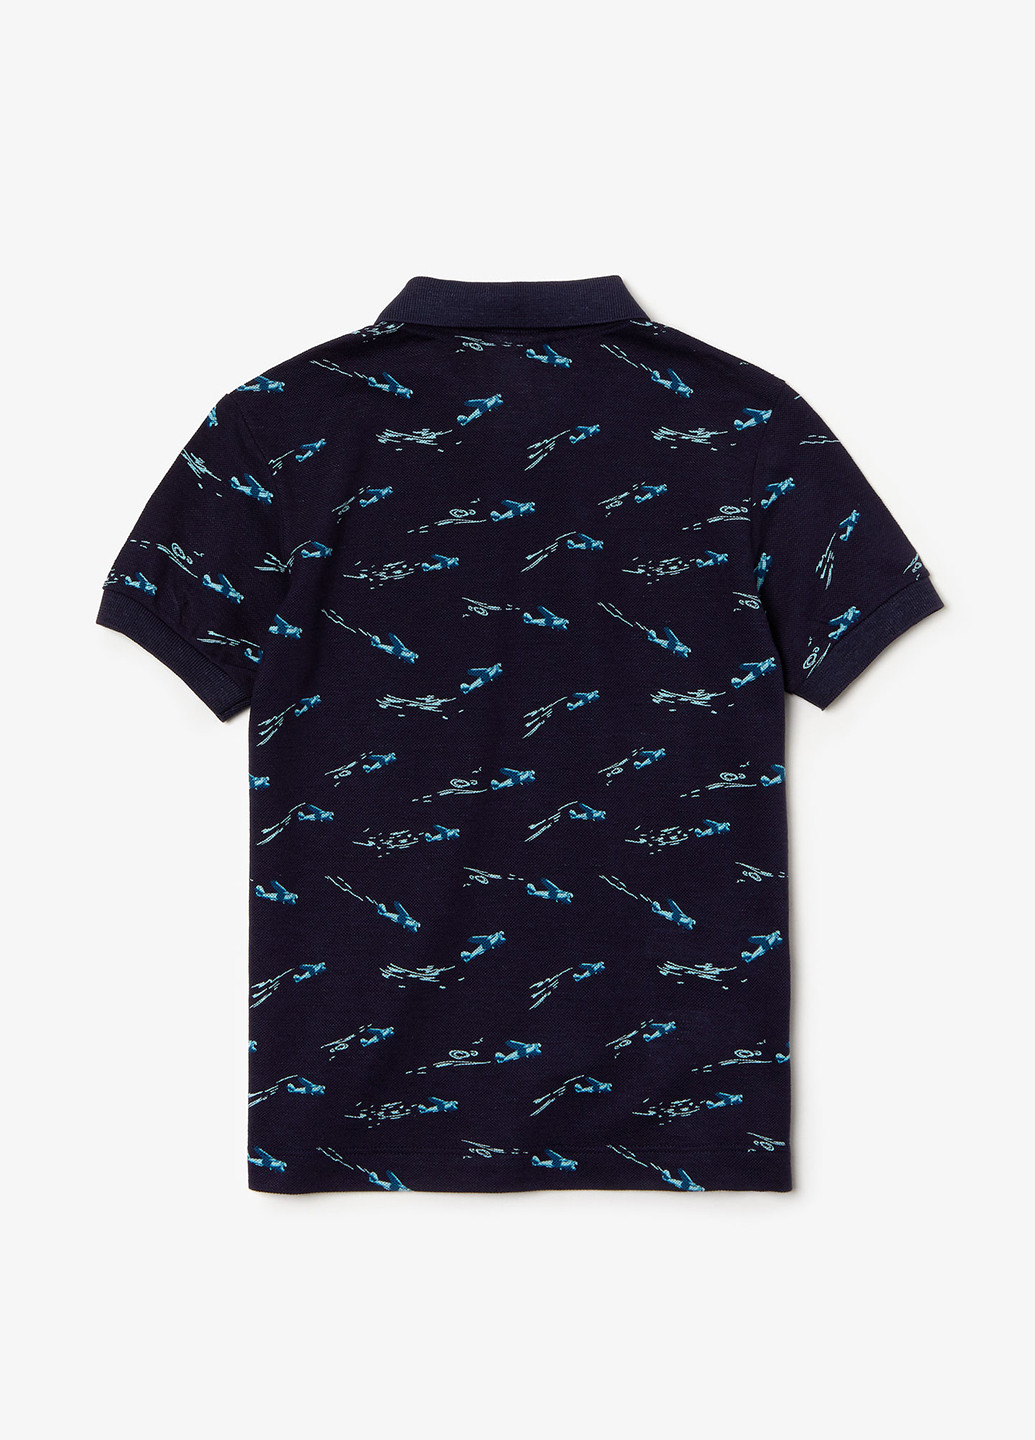 Темно-синяя детская футболка-поло для мальчика Lacoste с рисунком